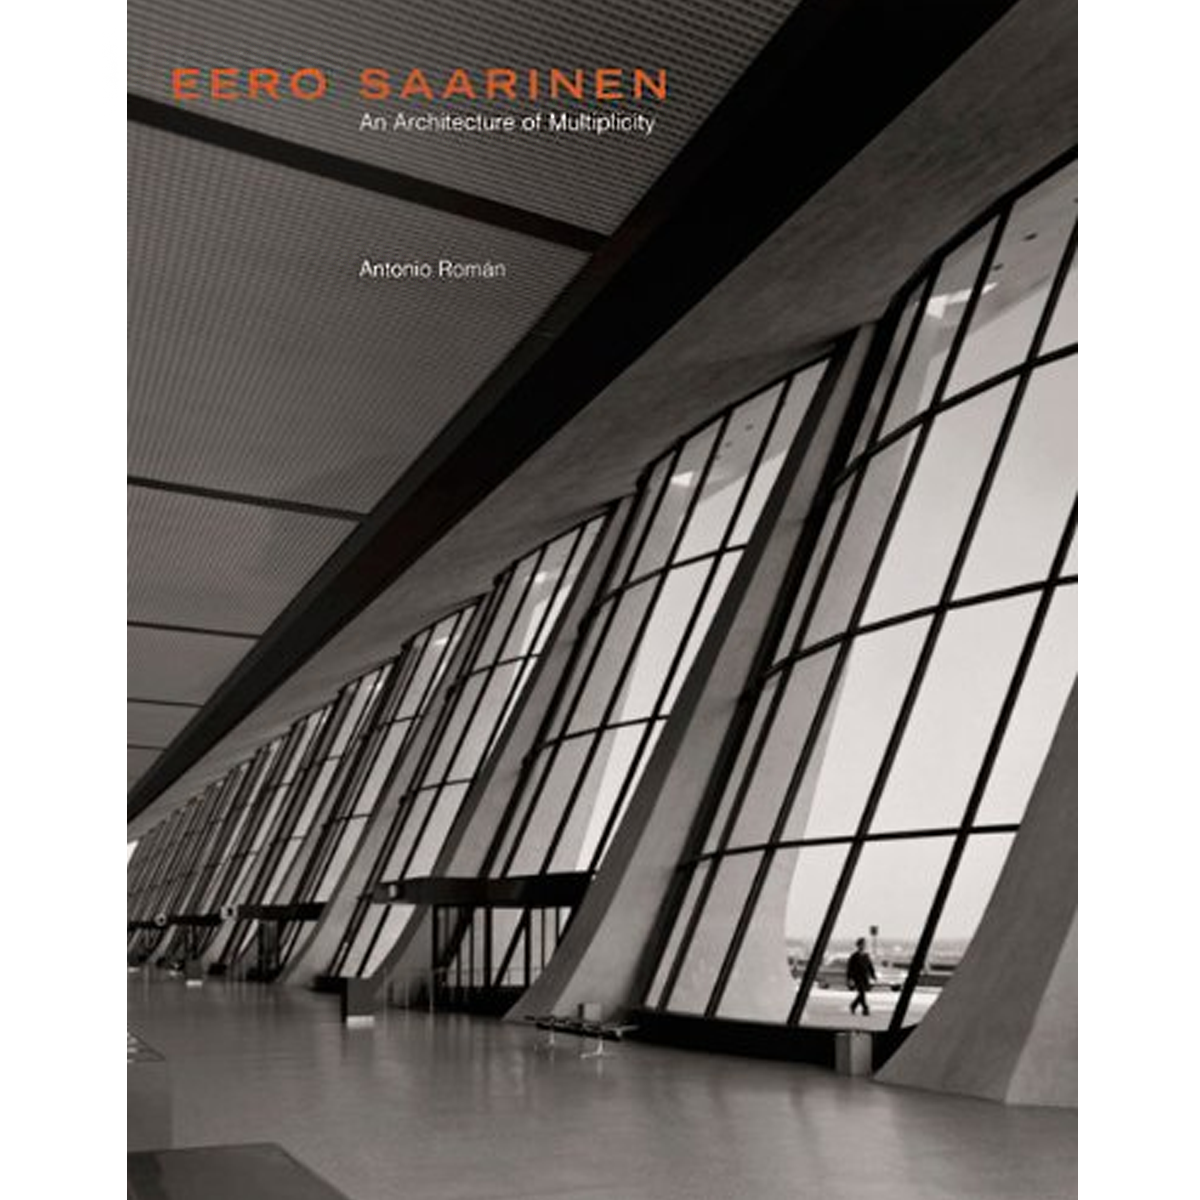 Eero Saarinen: An Architecture of Multiplicity